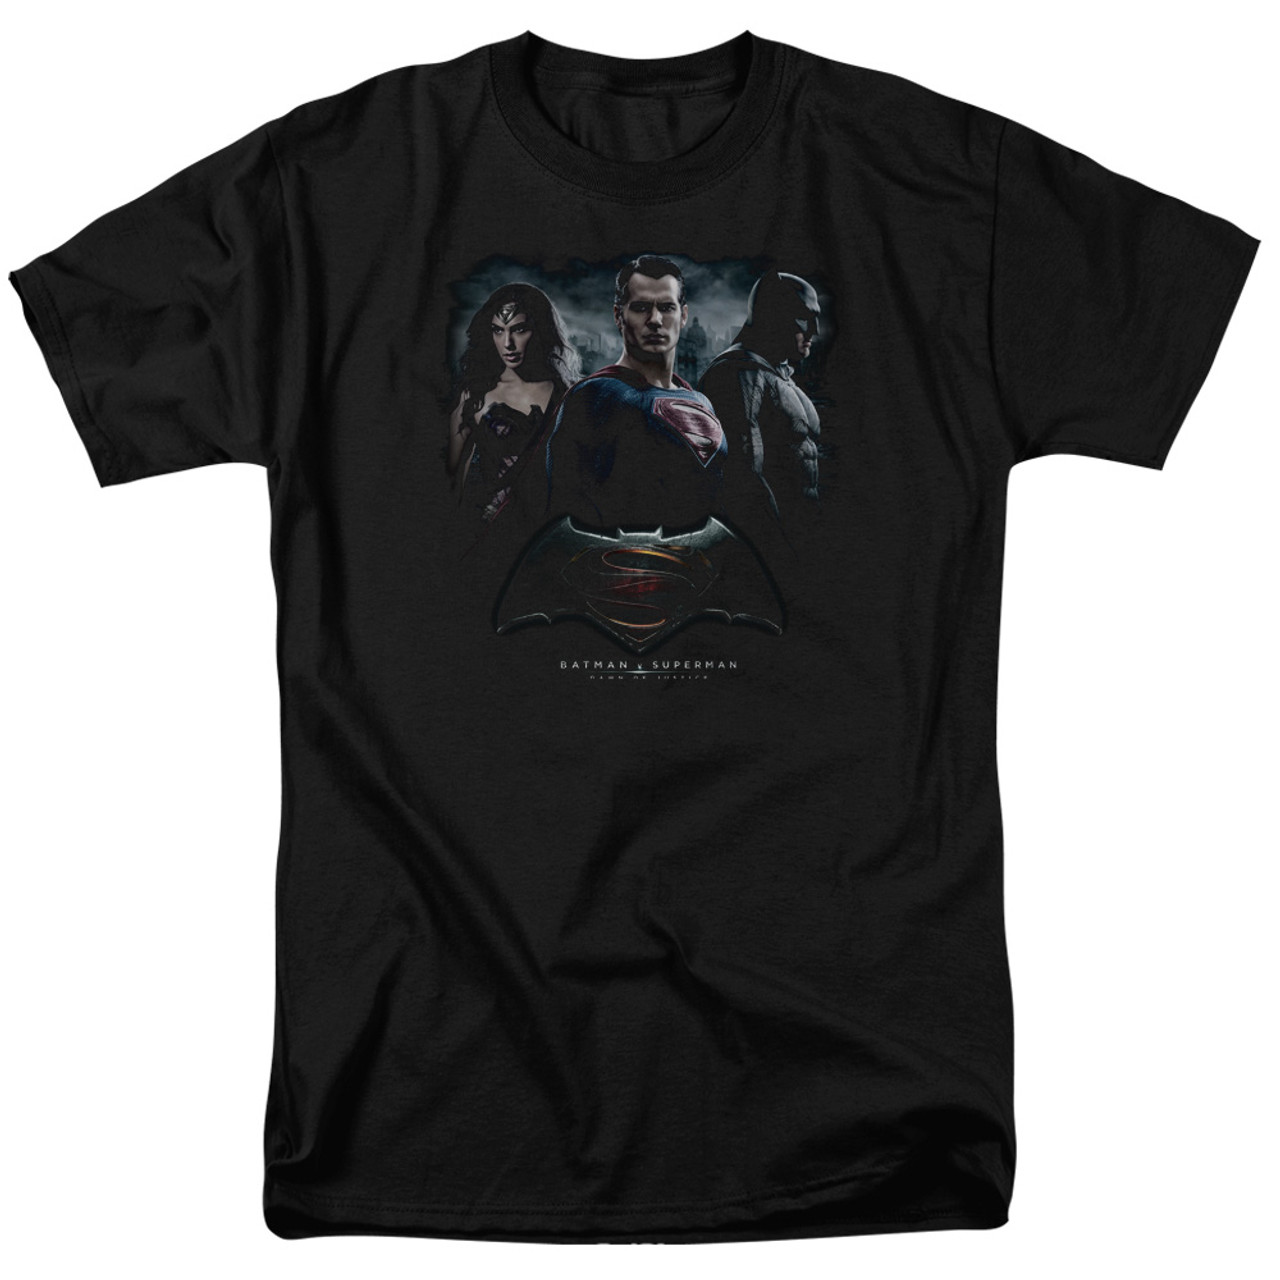 Batman V Superman T-Shirt - The Crew 